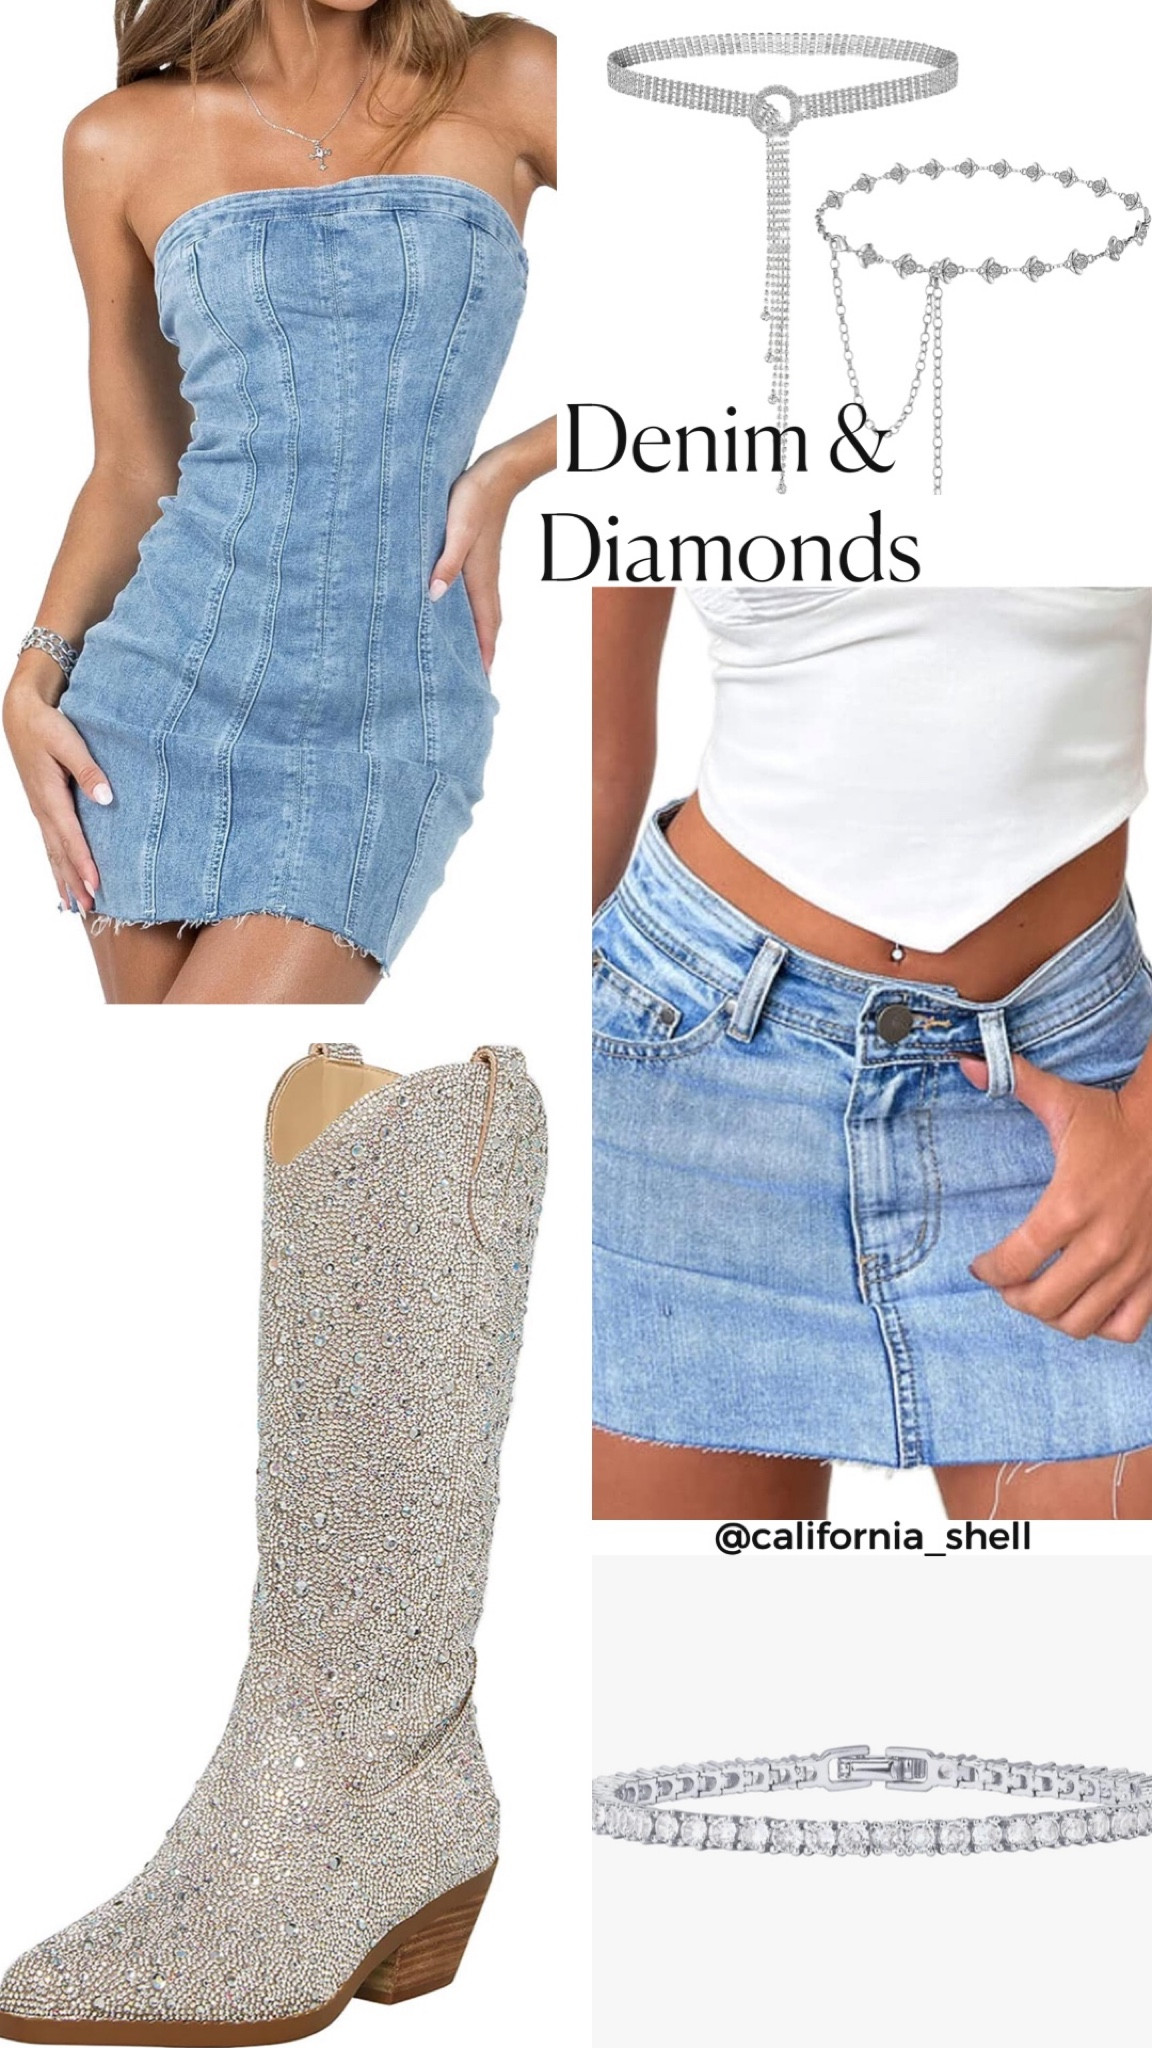 denim and diamonds dress